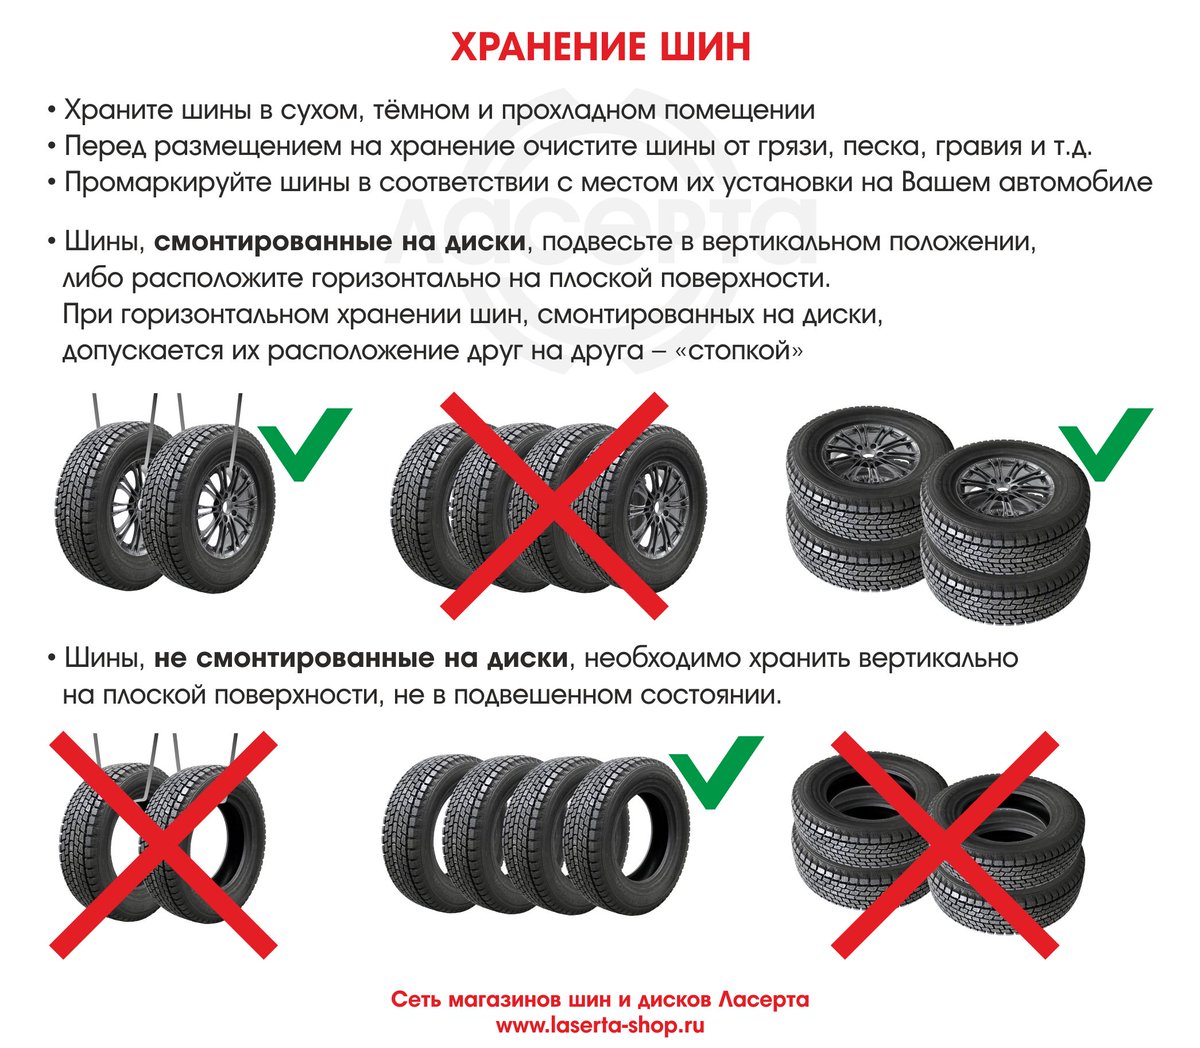 Хранение шин на дисках: Как правильно хранить колеса (шины) — советы эксперта — журнал За рулем